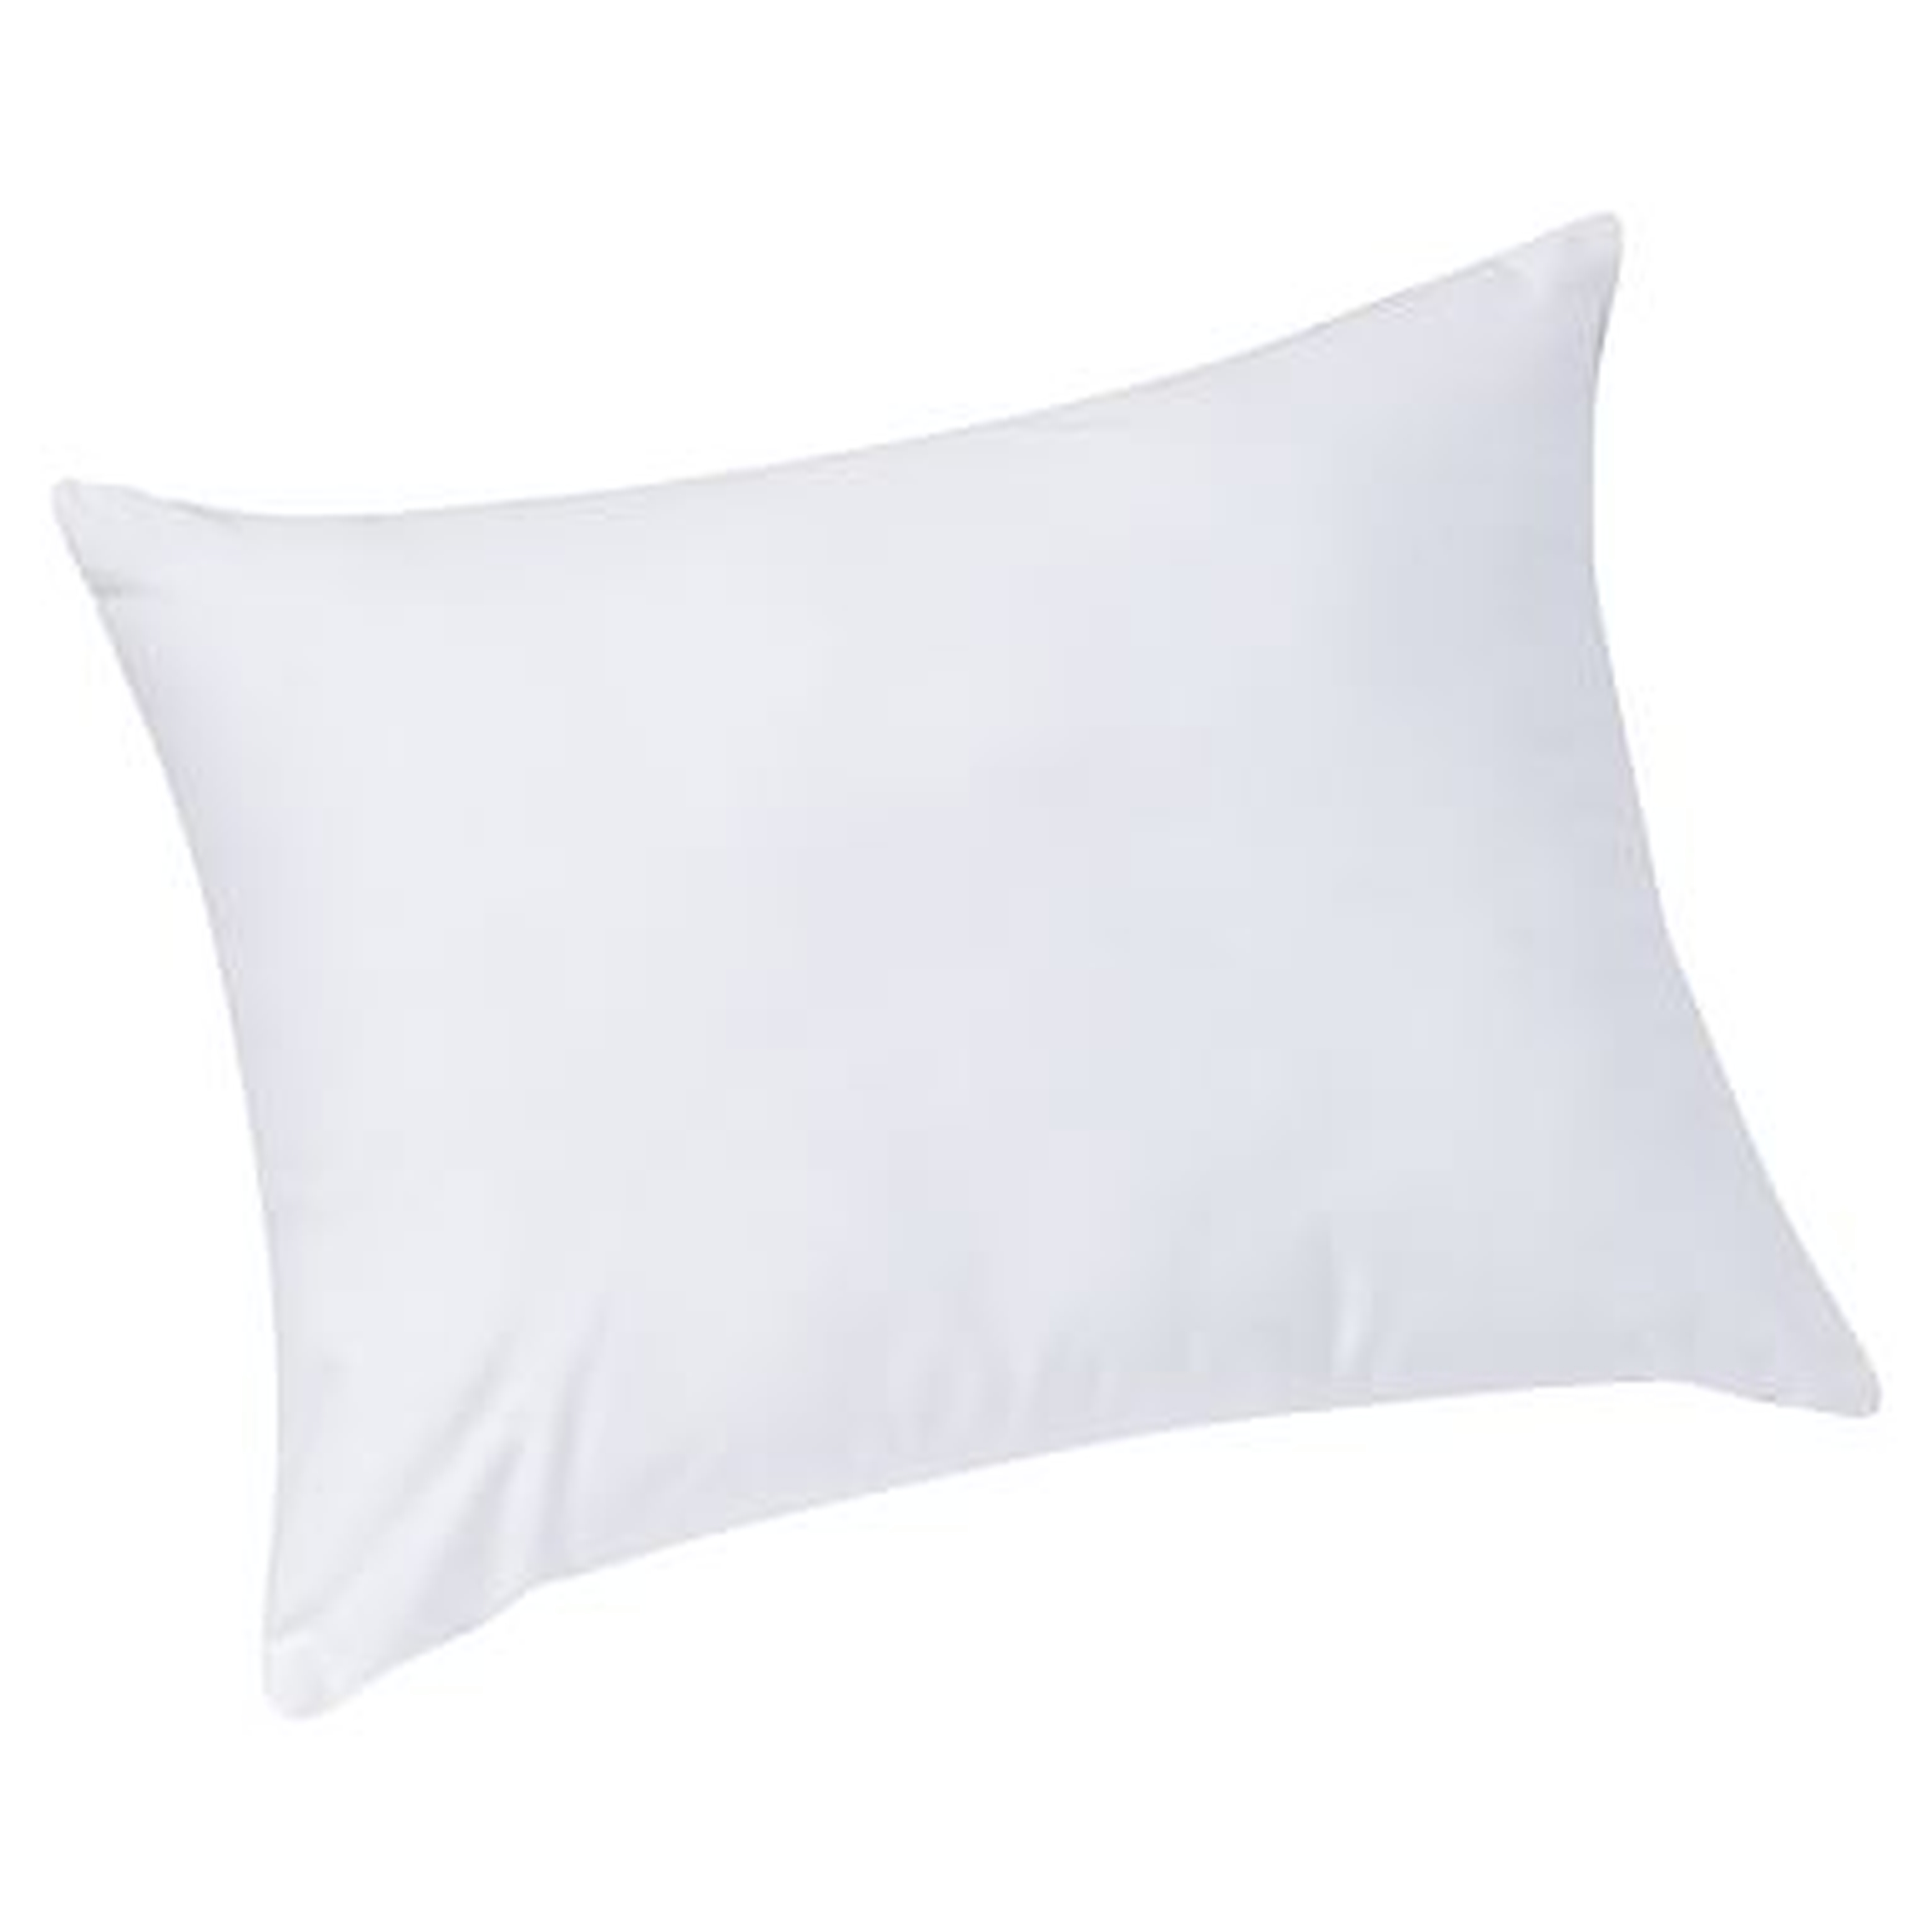 Spiraloft Pillow Insert, 12x16" Long - Pottery Barn Teen